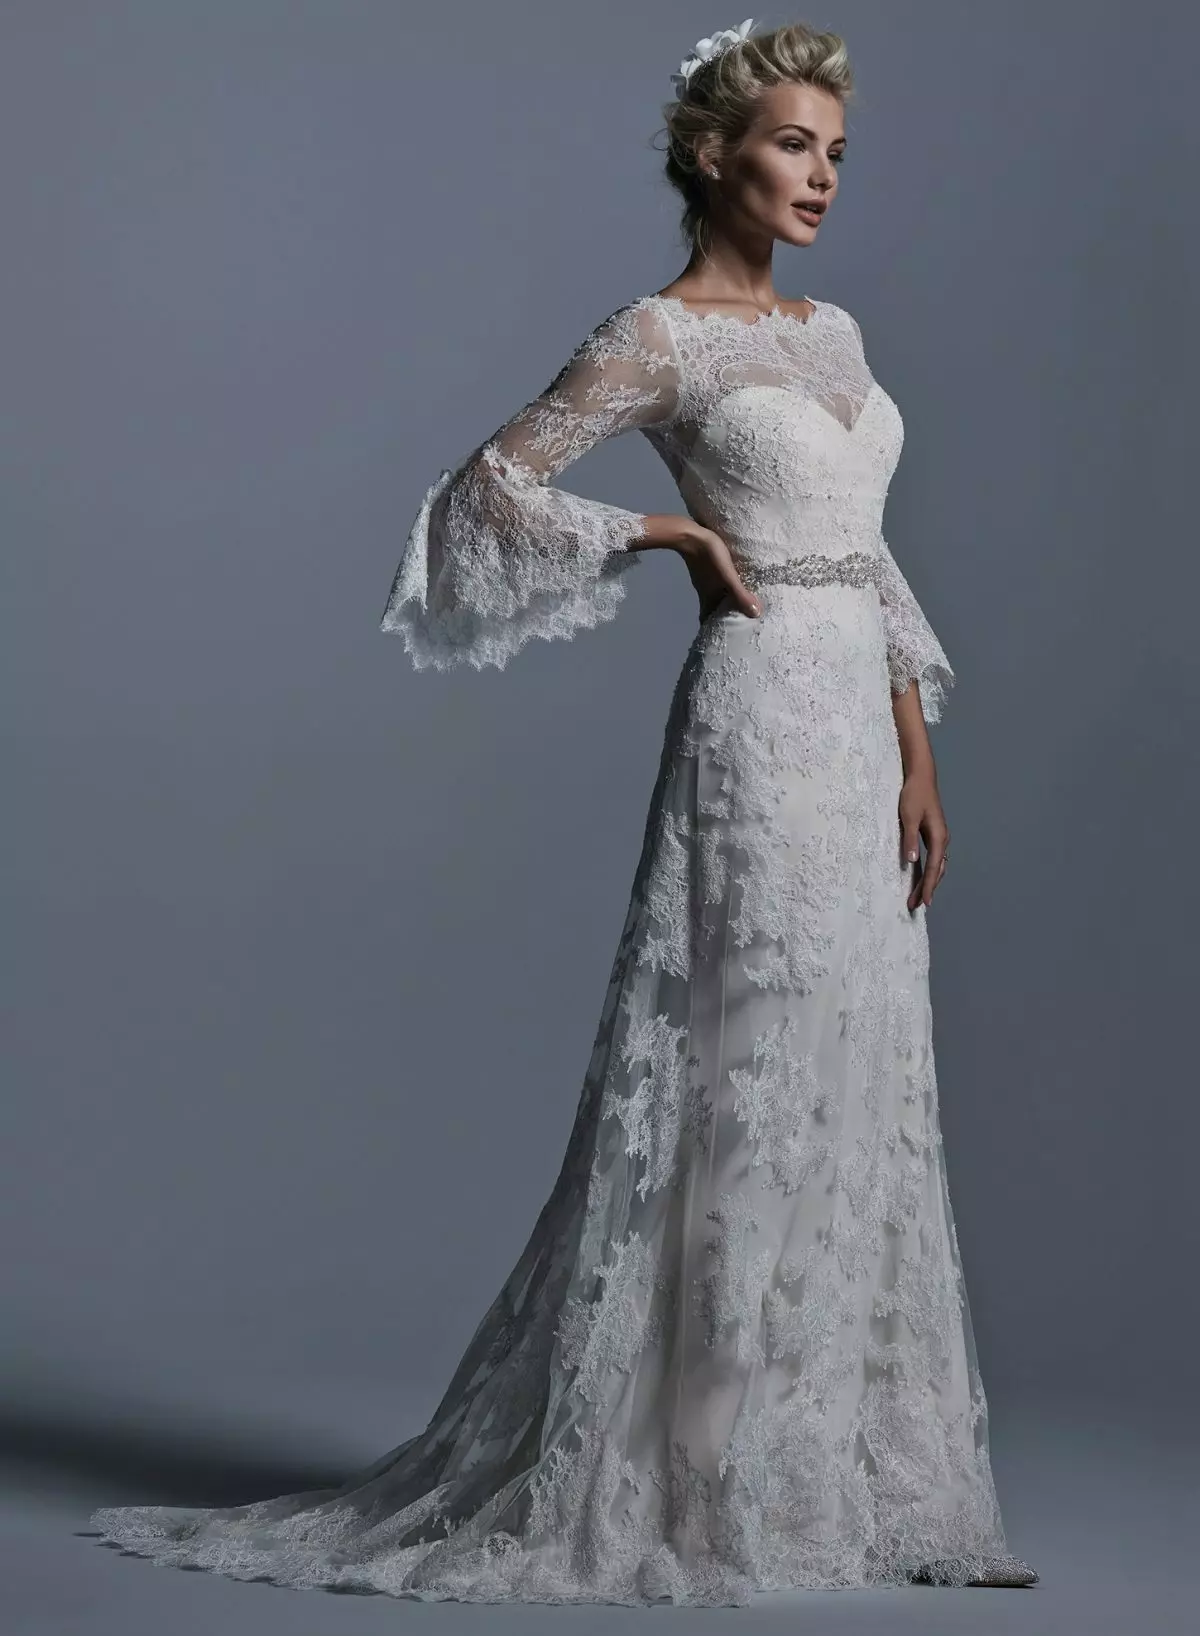 Lace Wedding Gaun nganggo Gaya Lengan ing Gaya Vintage